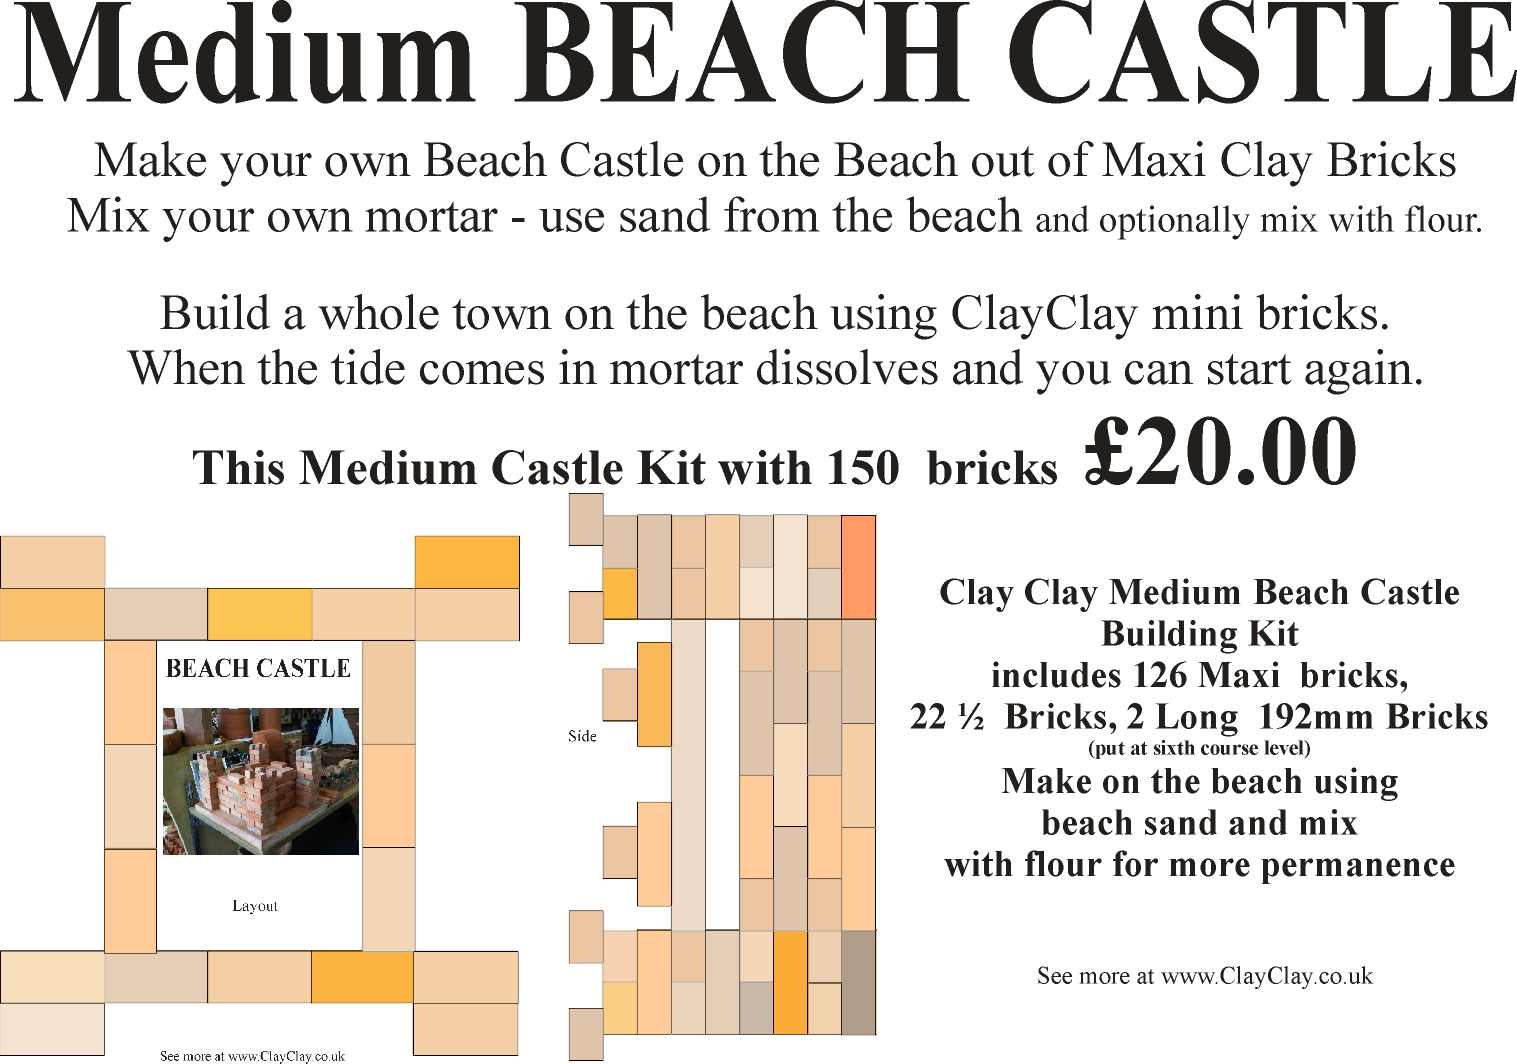 Medium Beach Castle Kit Maxi Bricks. Make own the beach castle and use Beach sand mixed with flour as mortar.